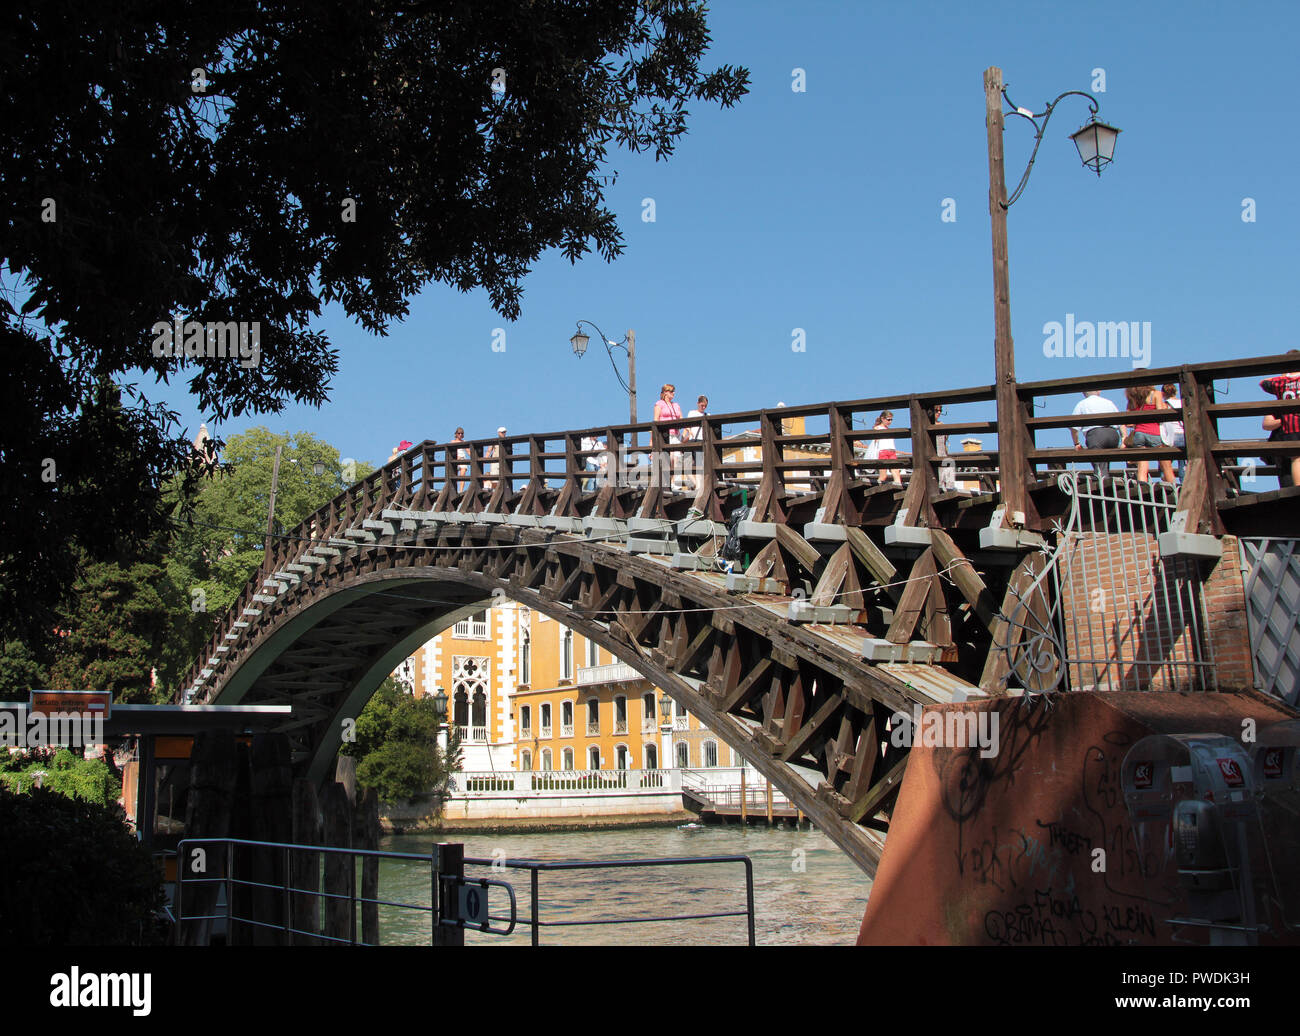 Le Ponte dell'Accademia, est l'un des 4 ponts qui traversent l'artère principale de Venise ; le grand canal. Il est nommé d'après le musée et galeries qui sont à proximité connu sous le nom de dell'Accademia et est une grande attraction touristique de Venise. Banque D'Images